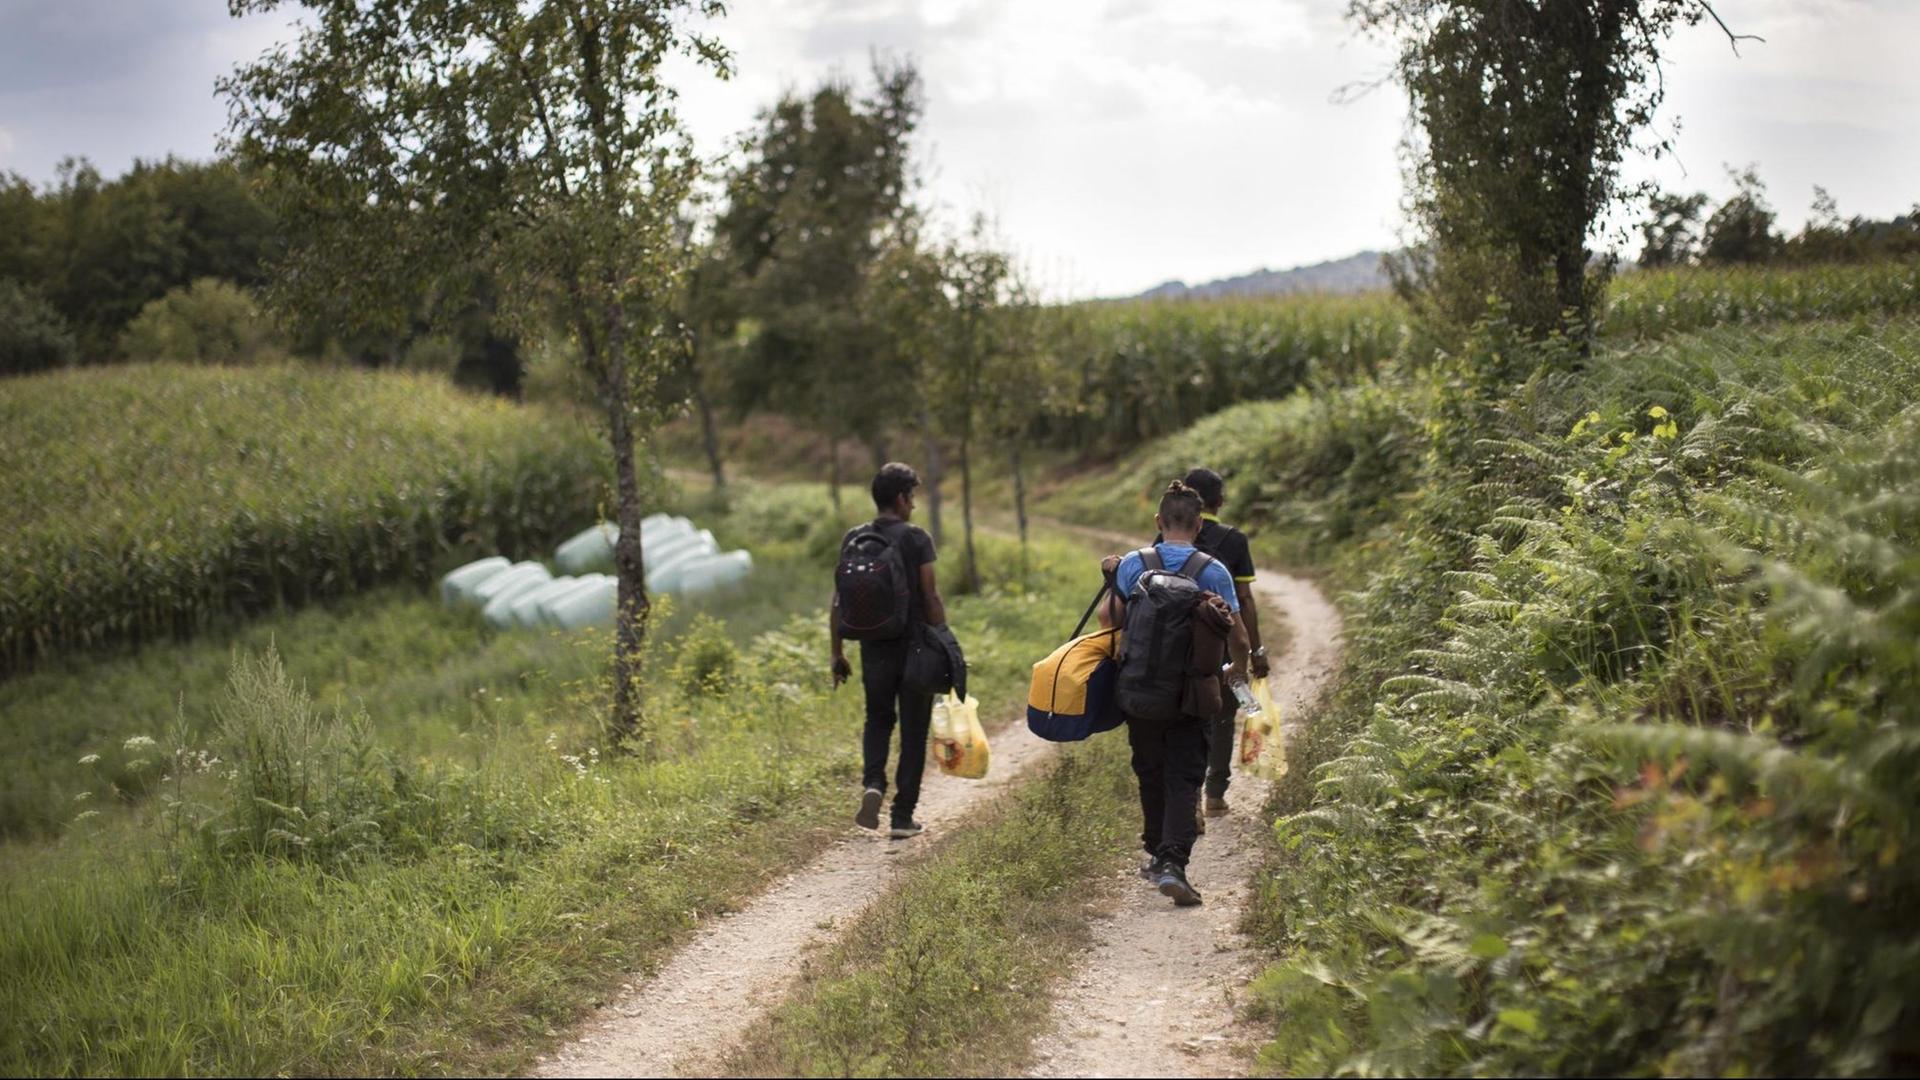 In der Nähe von Velika Kladusa, Bosnien und Herzogewina, versuchen Flüchtlinge am 13.8.2018 die kroatische Grenze zu erreichen